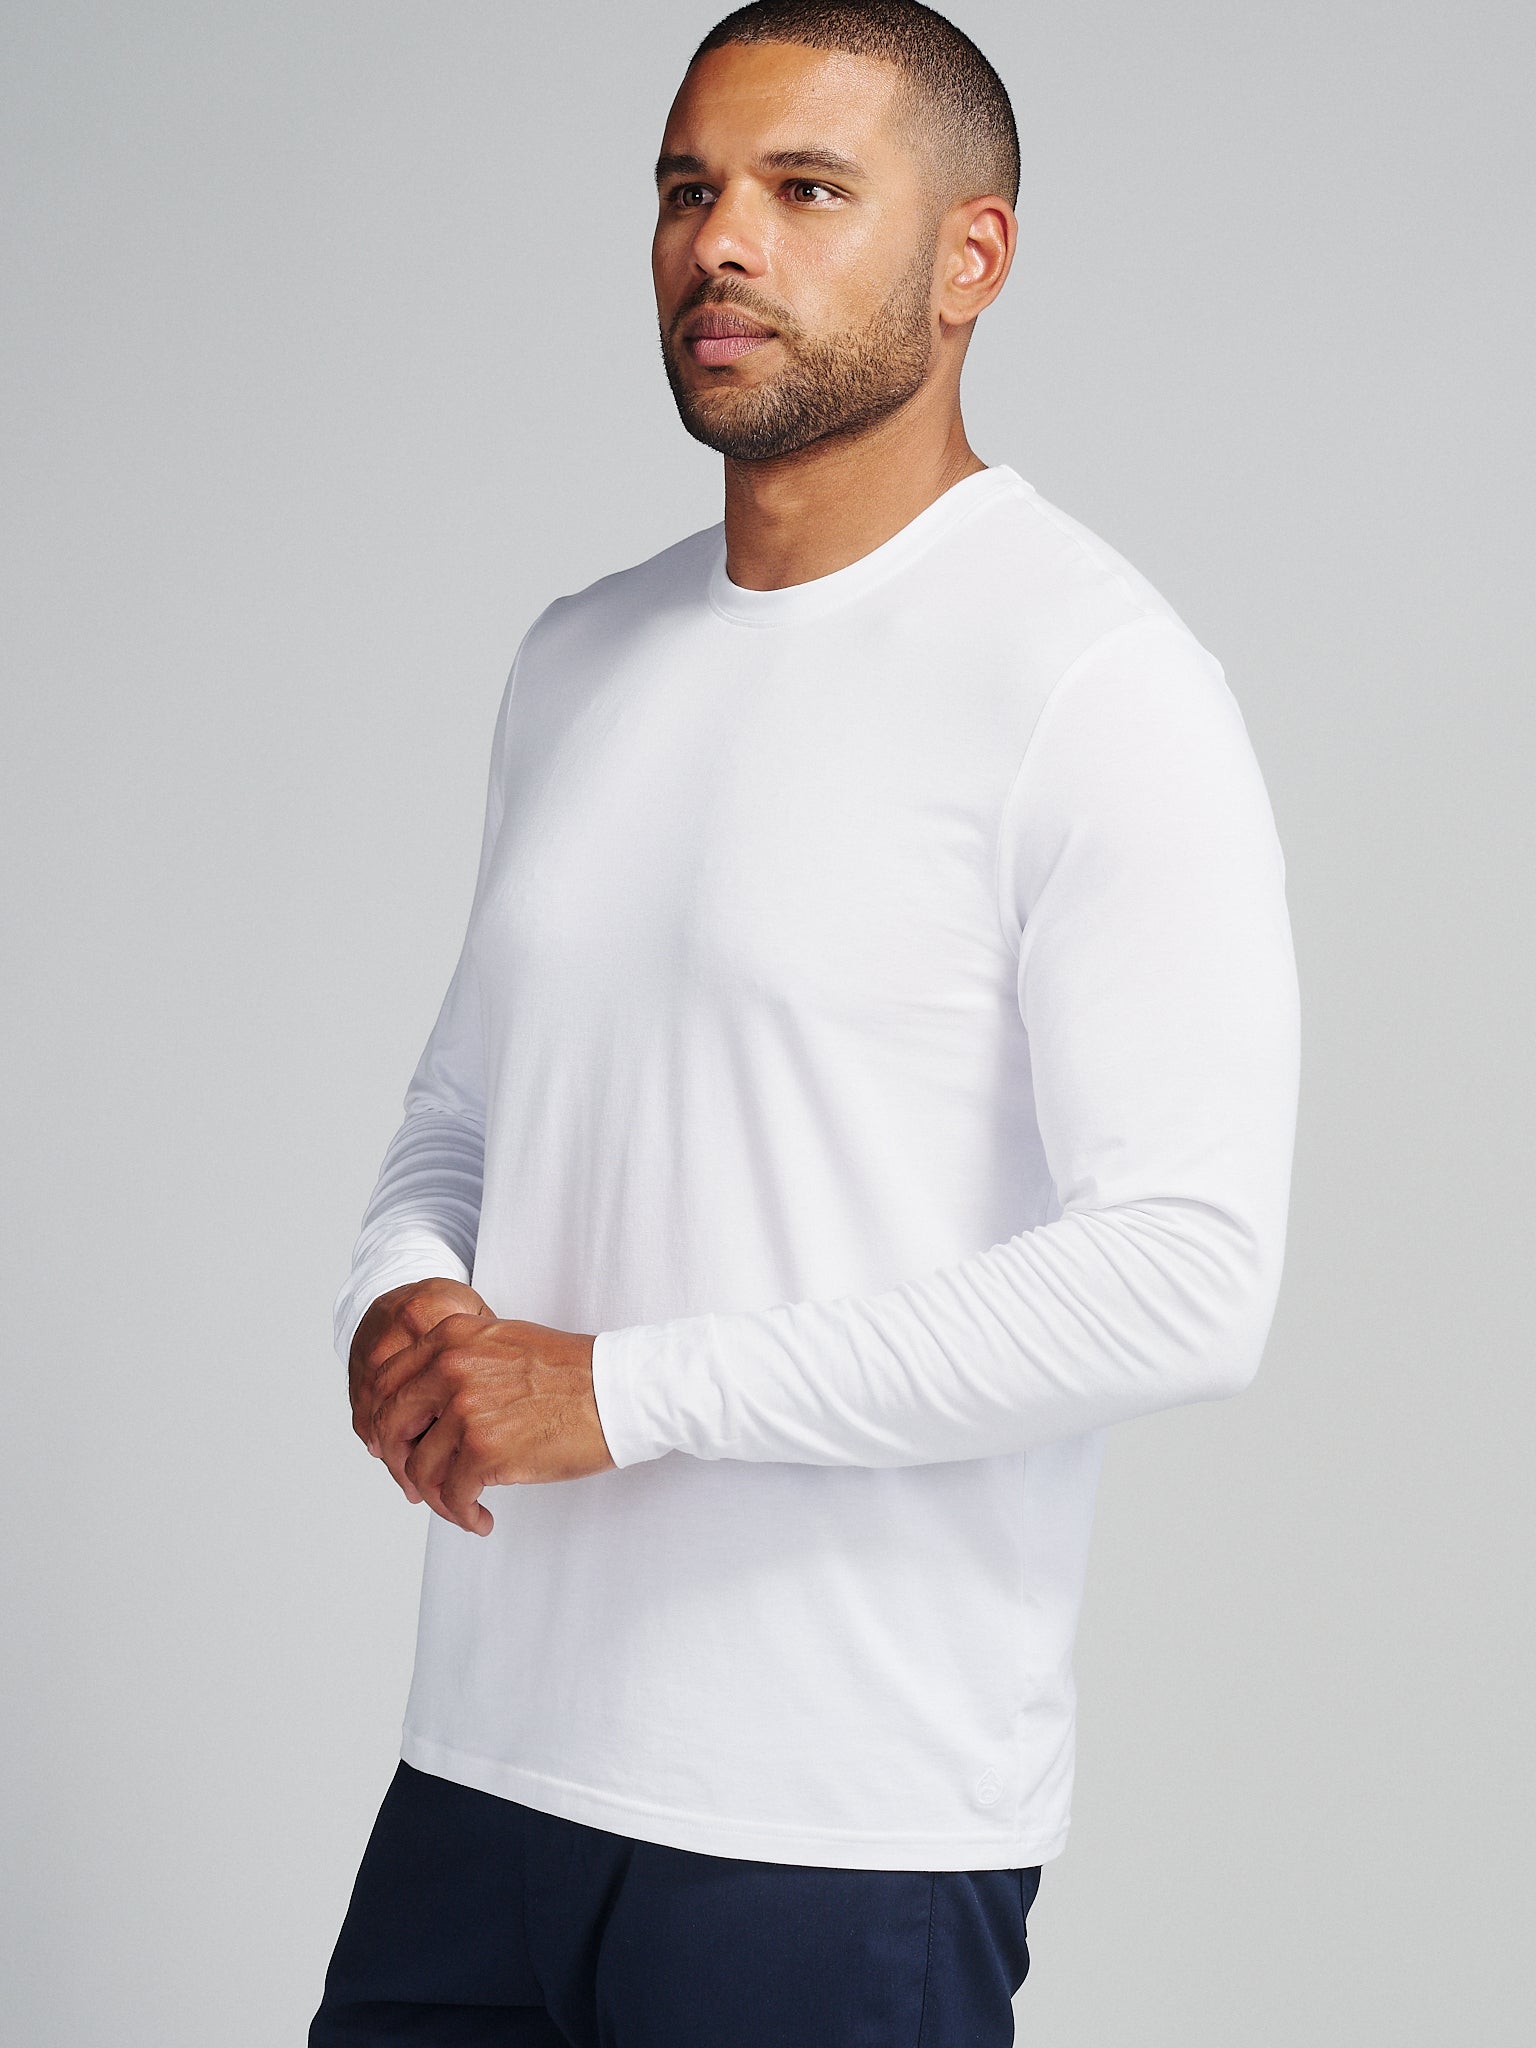 Pimaluxe Long Sleeve T-Shirt tasc Performance (White)